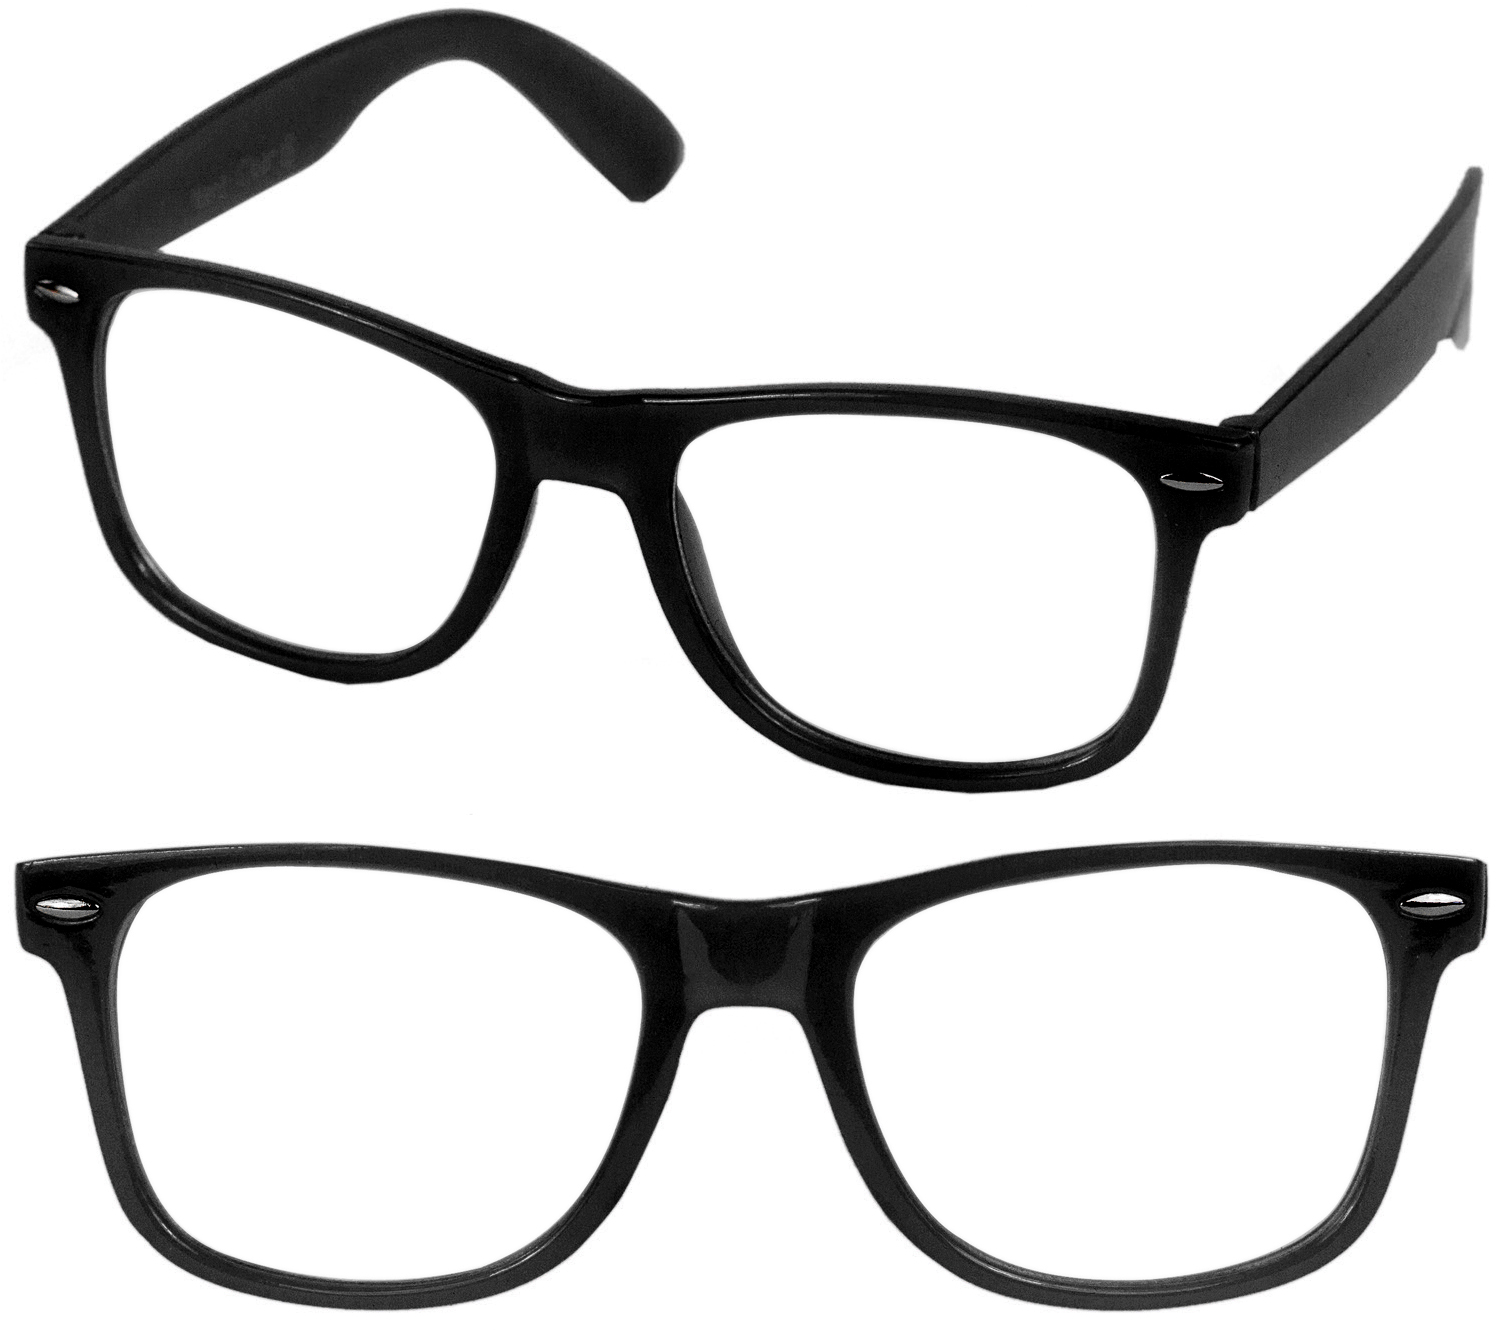 Nerd Brille Nerdbrille Sonnenbrille Geek Unisex Sekretärin Männer Frauen schwarz 